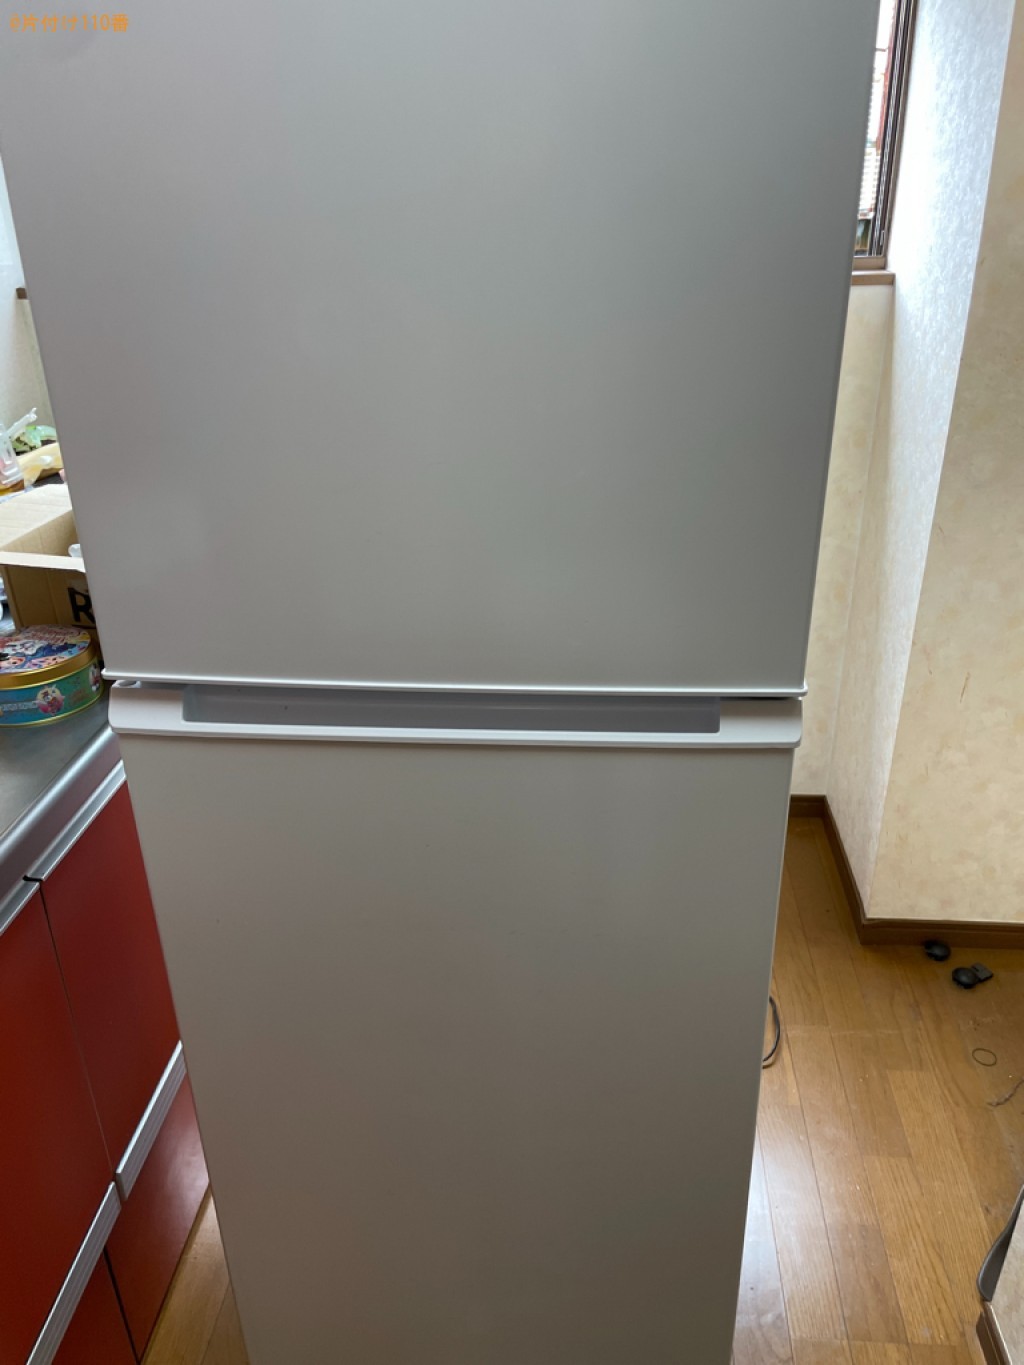 【横浜市戸塚区】170L以上冷蔵庫の出張不用品回収・処分ご依頼